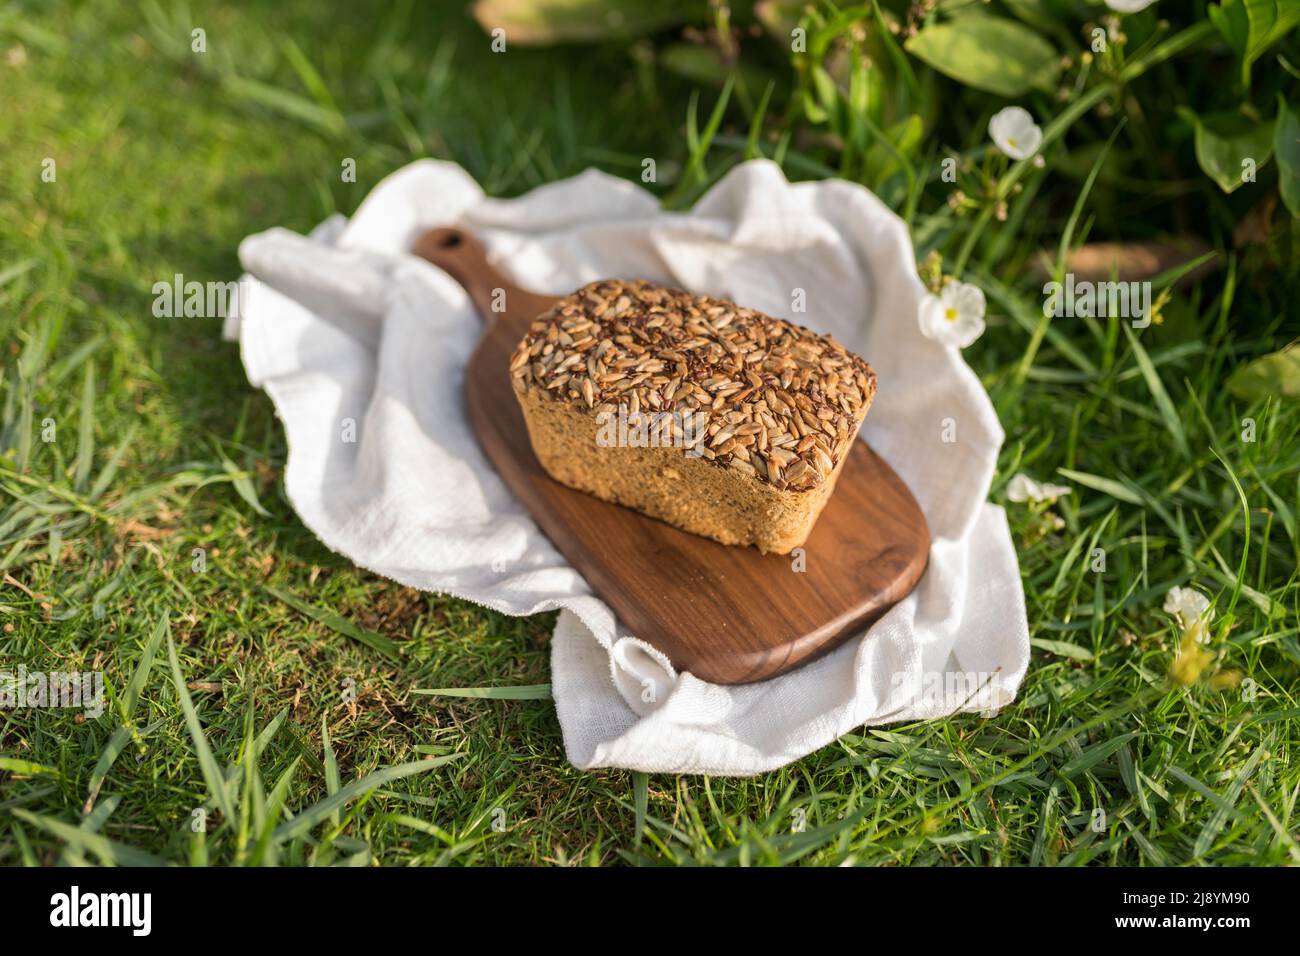 pane grigio fatto in casa con i semi sul bordo di legno con il tovagliolo di panno bianco sull'erba verde. Foto di alta qualità Foto Stock